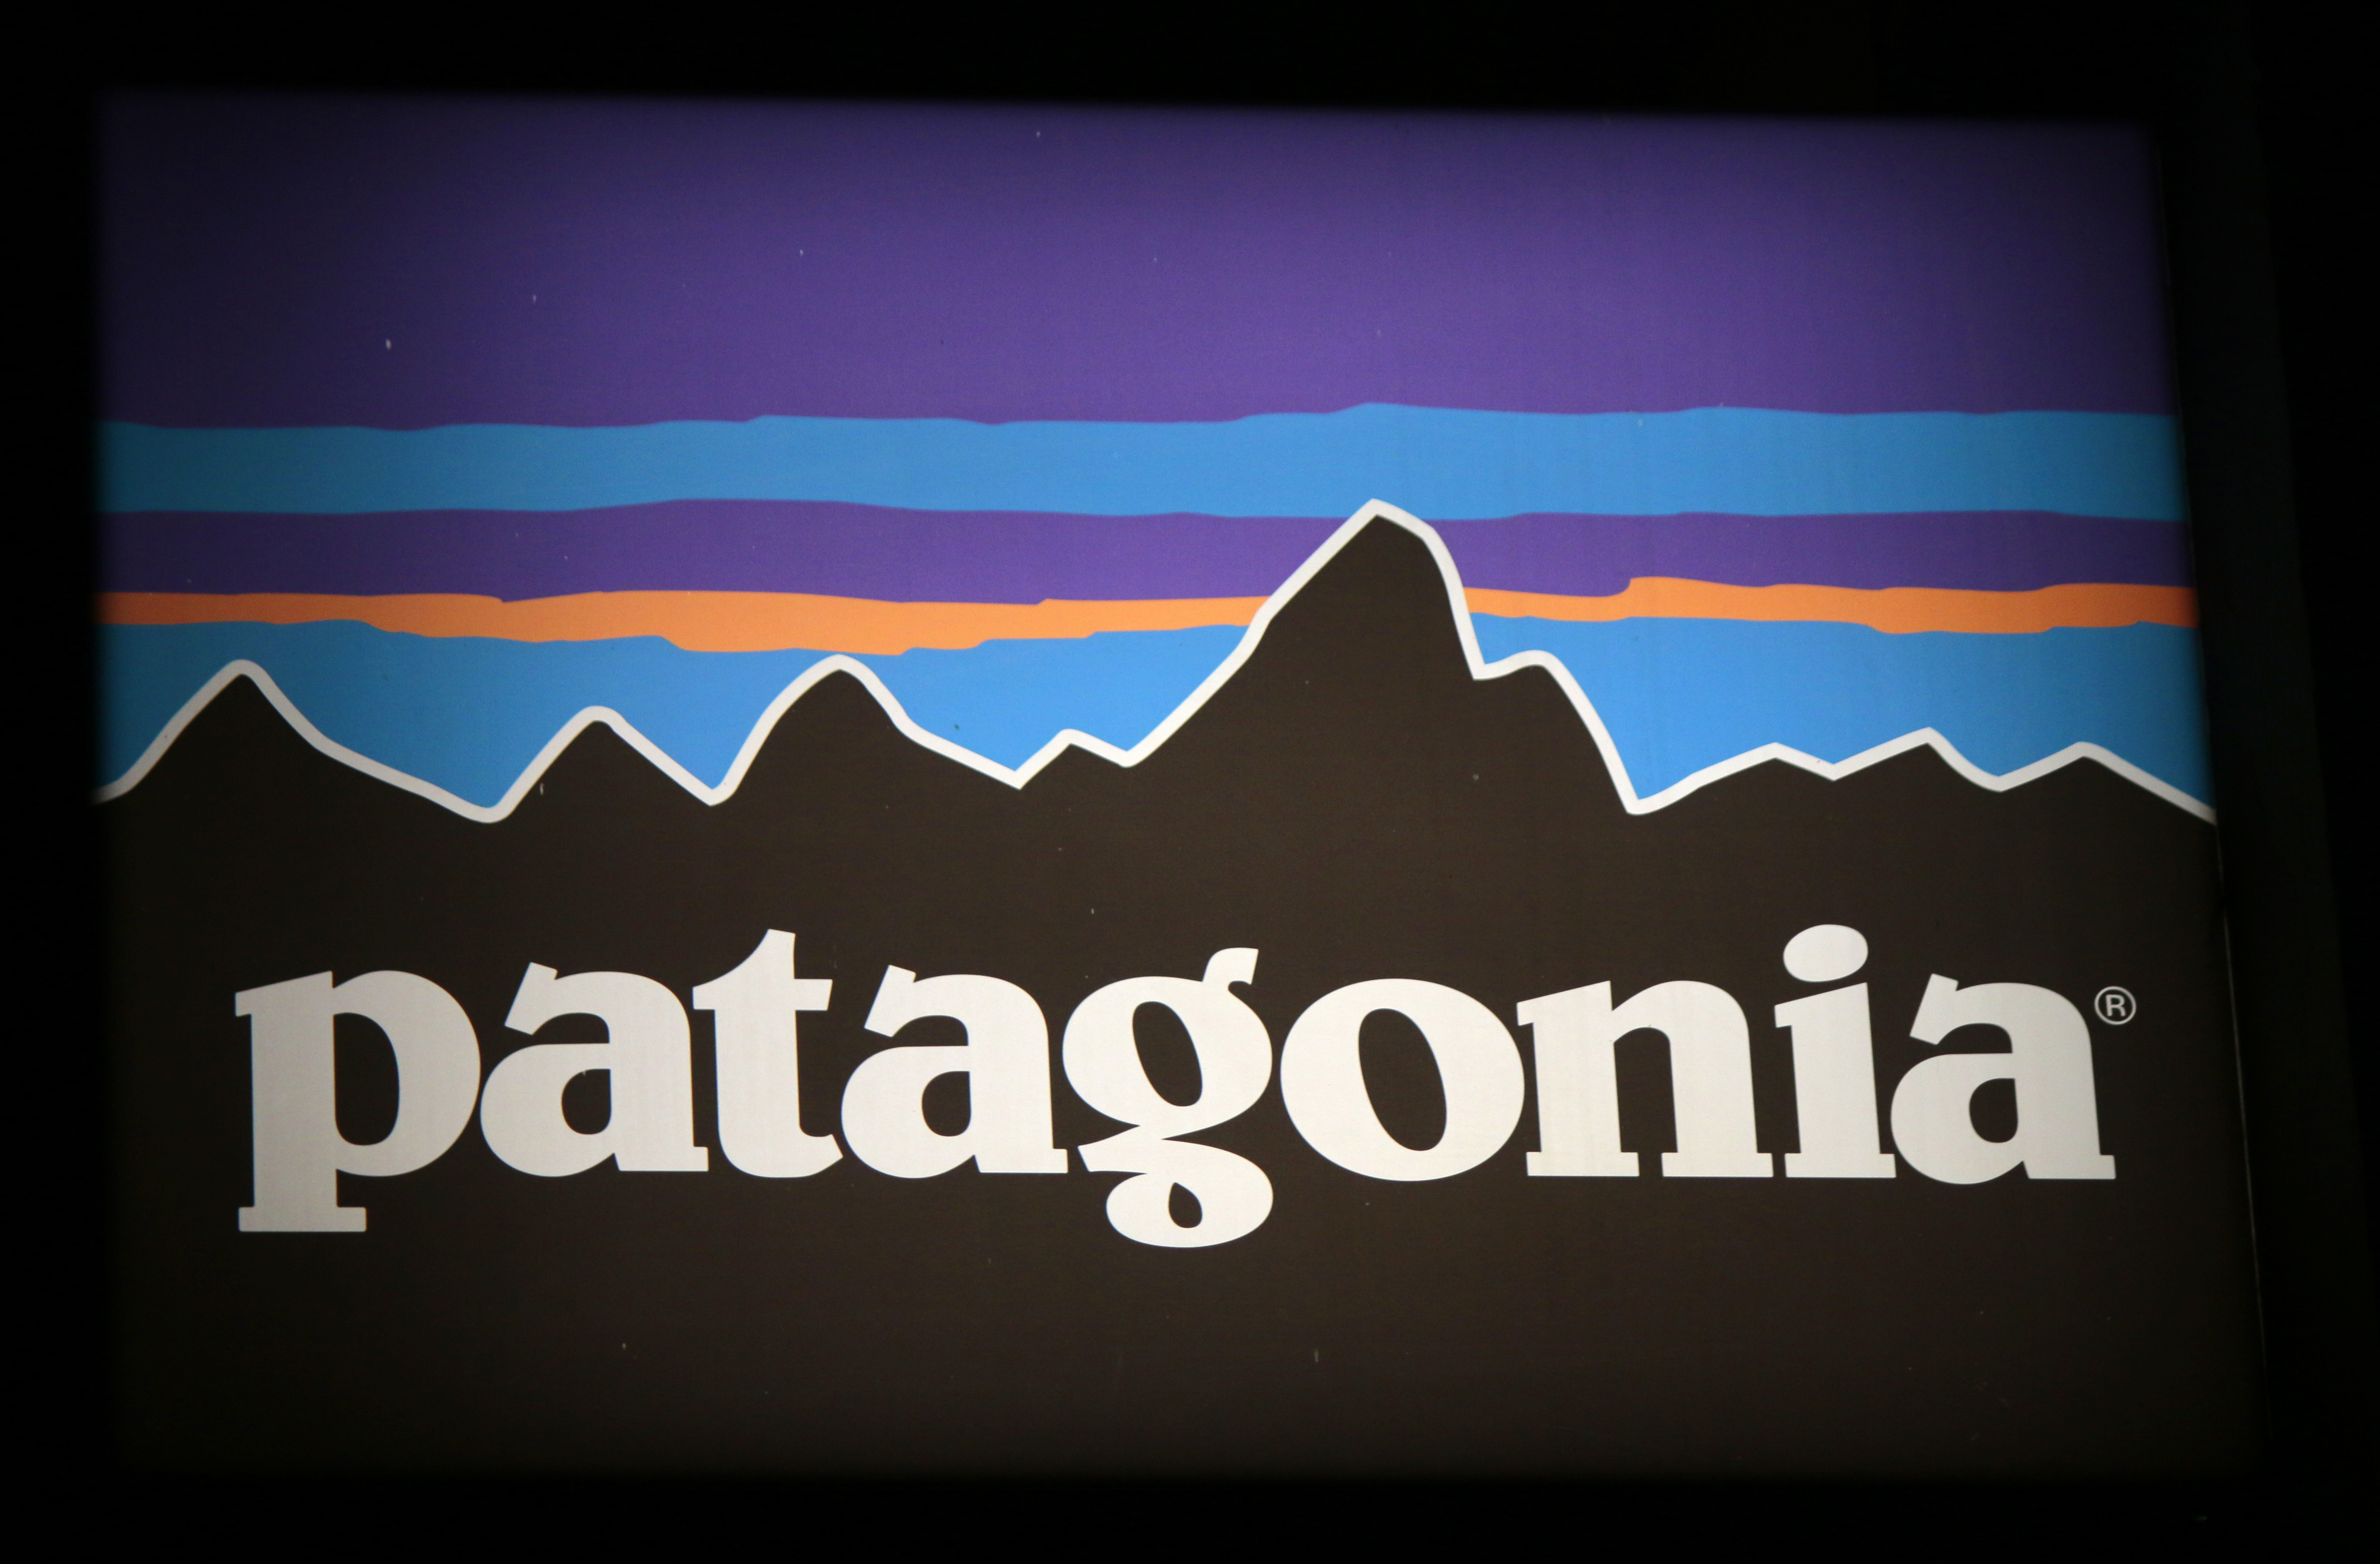 marketing patagonia sustainability